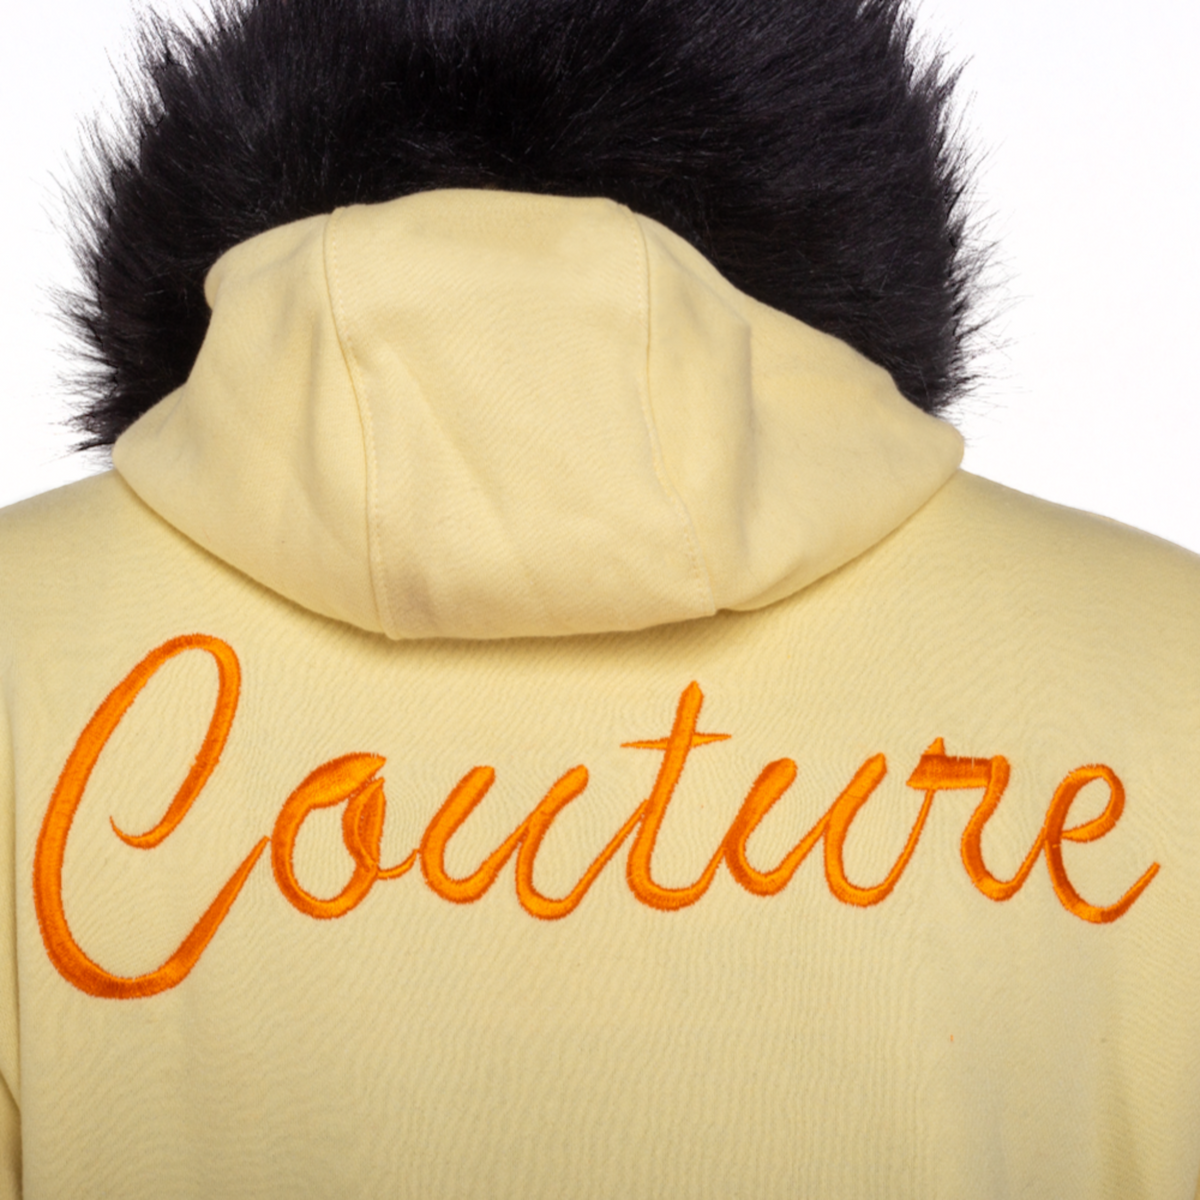 MDB Couture Women's M-Star Fur Hooded Fleece Sweatsuit - Light